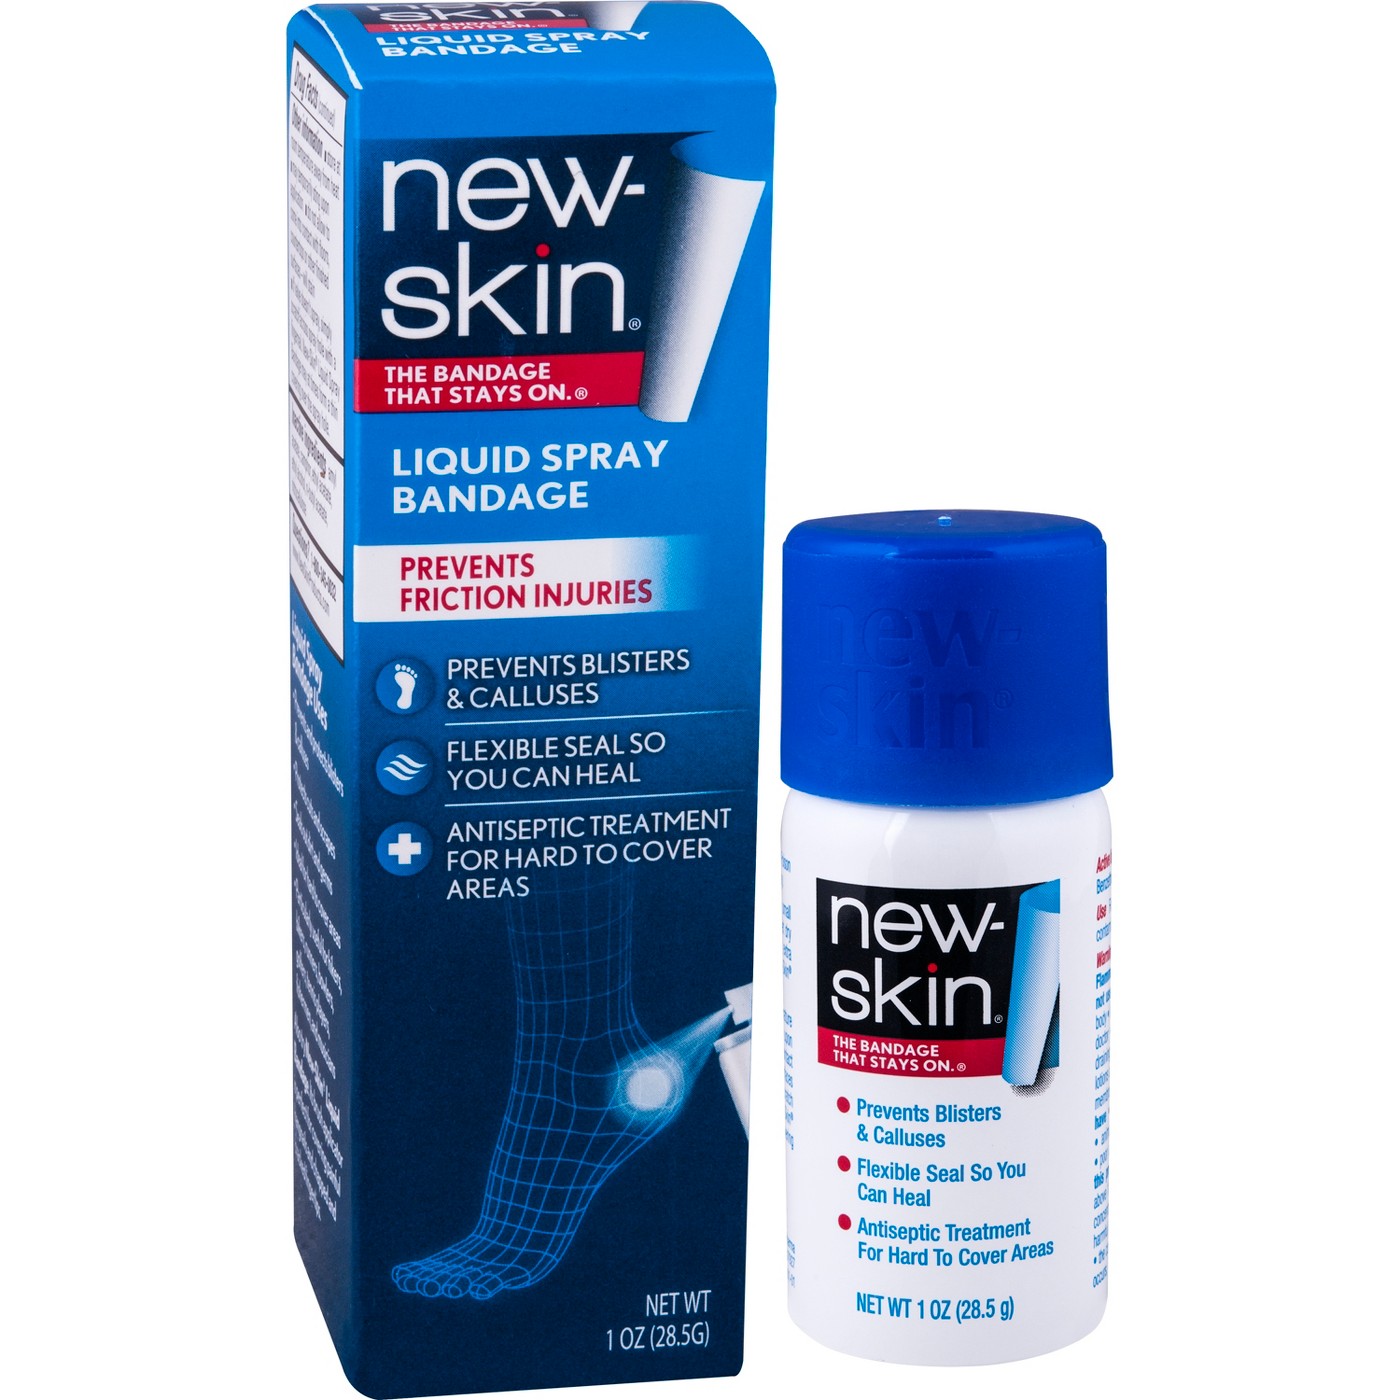 does new skin liquid bandage expire